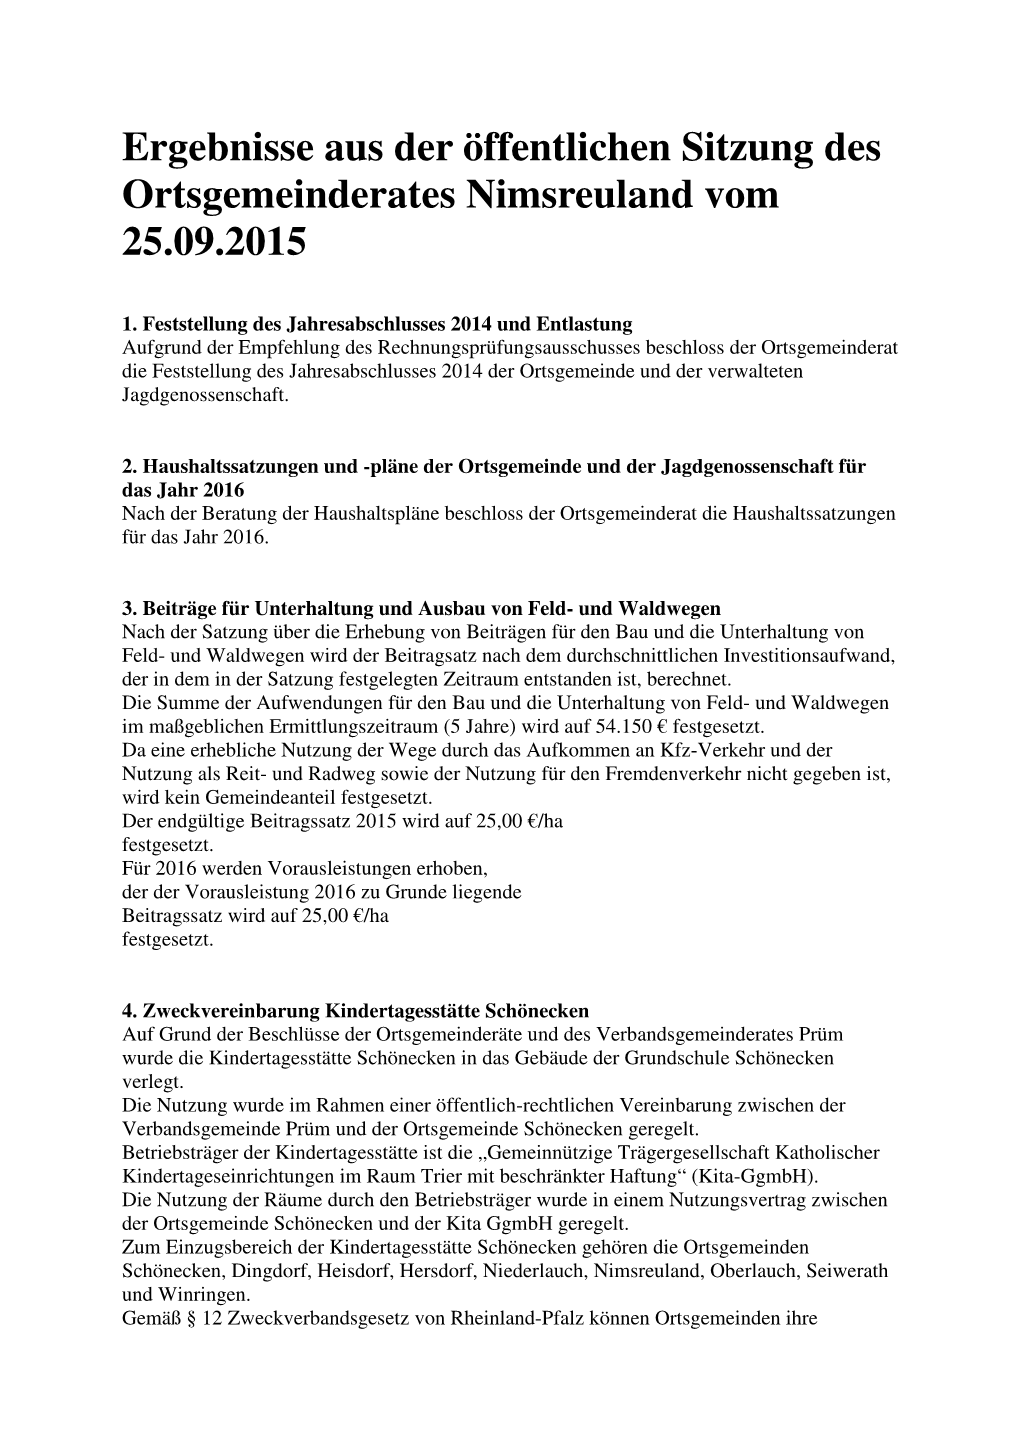 Ergebnisse Aus Der Öffentlichen Sitzung Des Ortsgemeinderates Nimsreuland Vom 25.09.2015